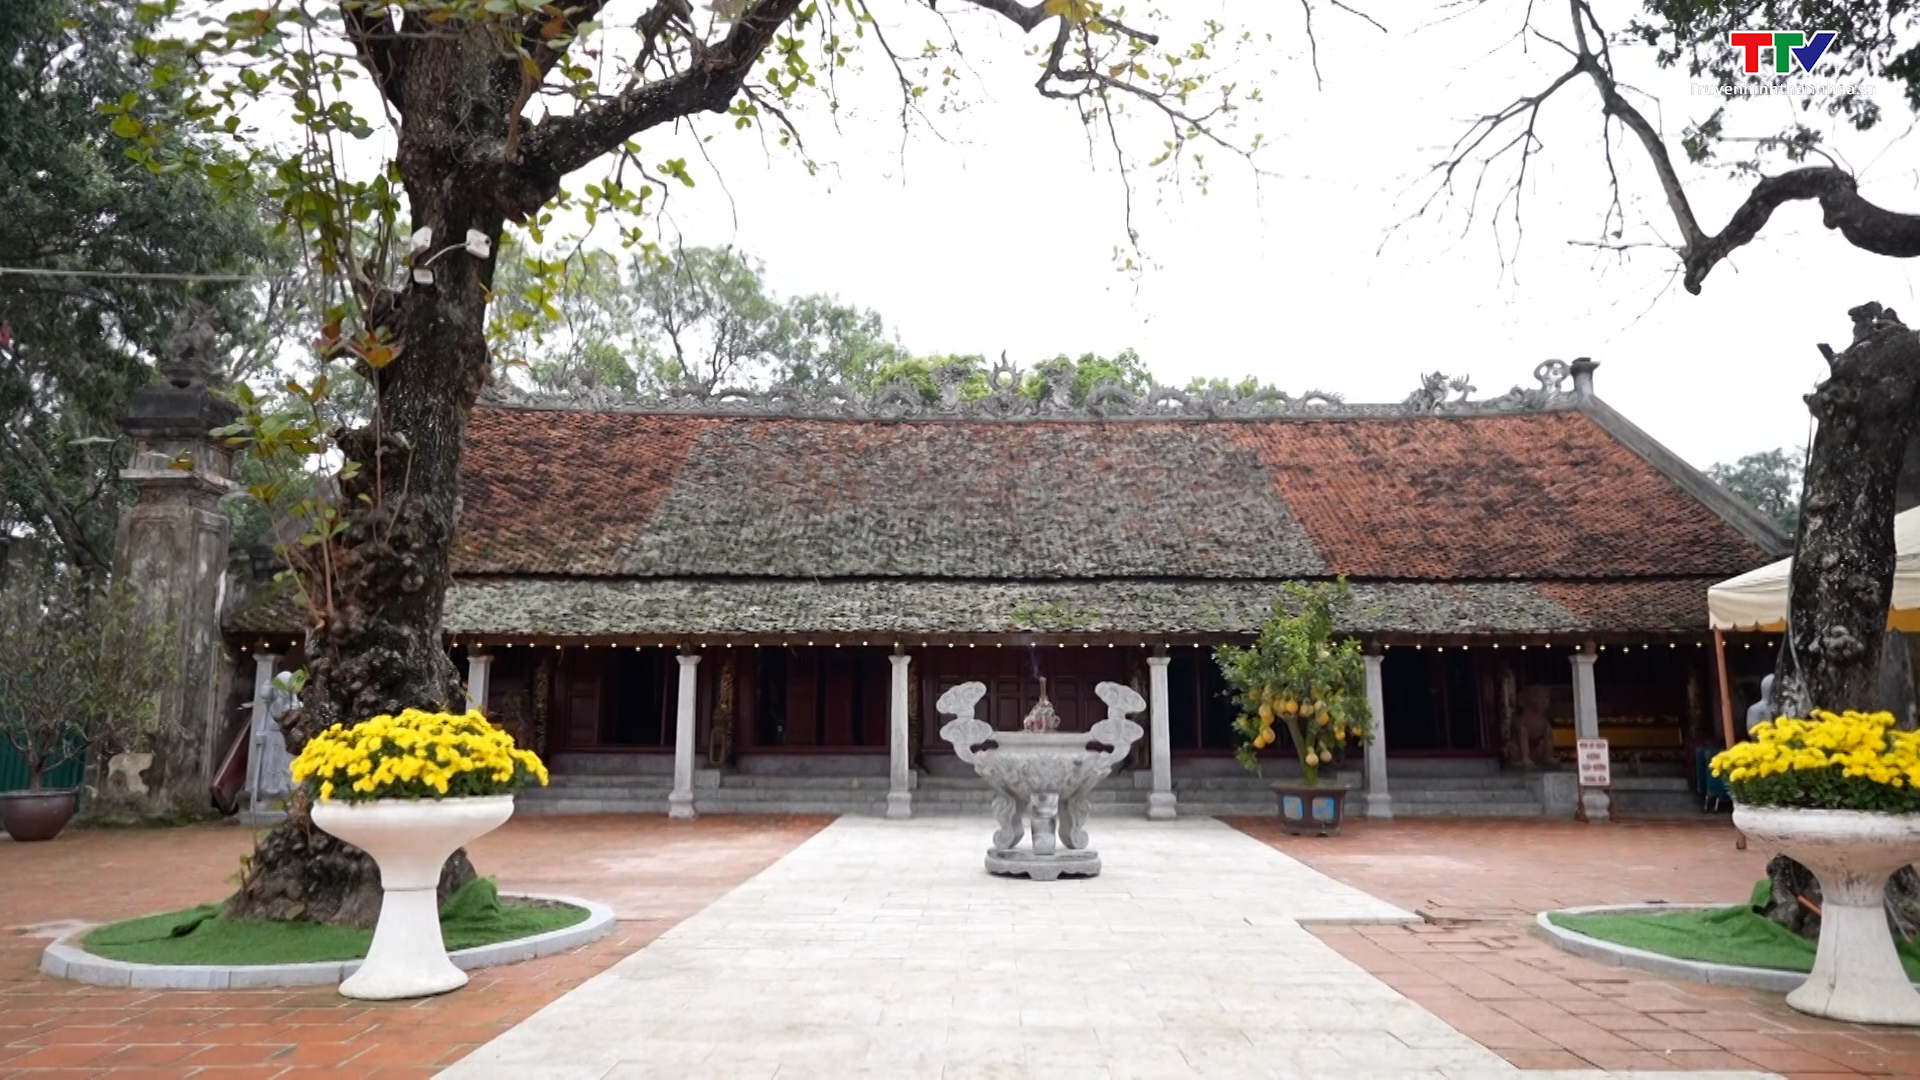 Thái miếu nhà Hậu Lê - Nơi lưu giữ kiến trúc độc đáo - Ảnh 2.